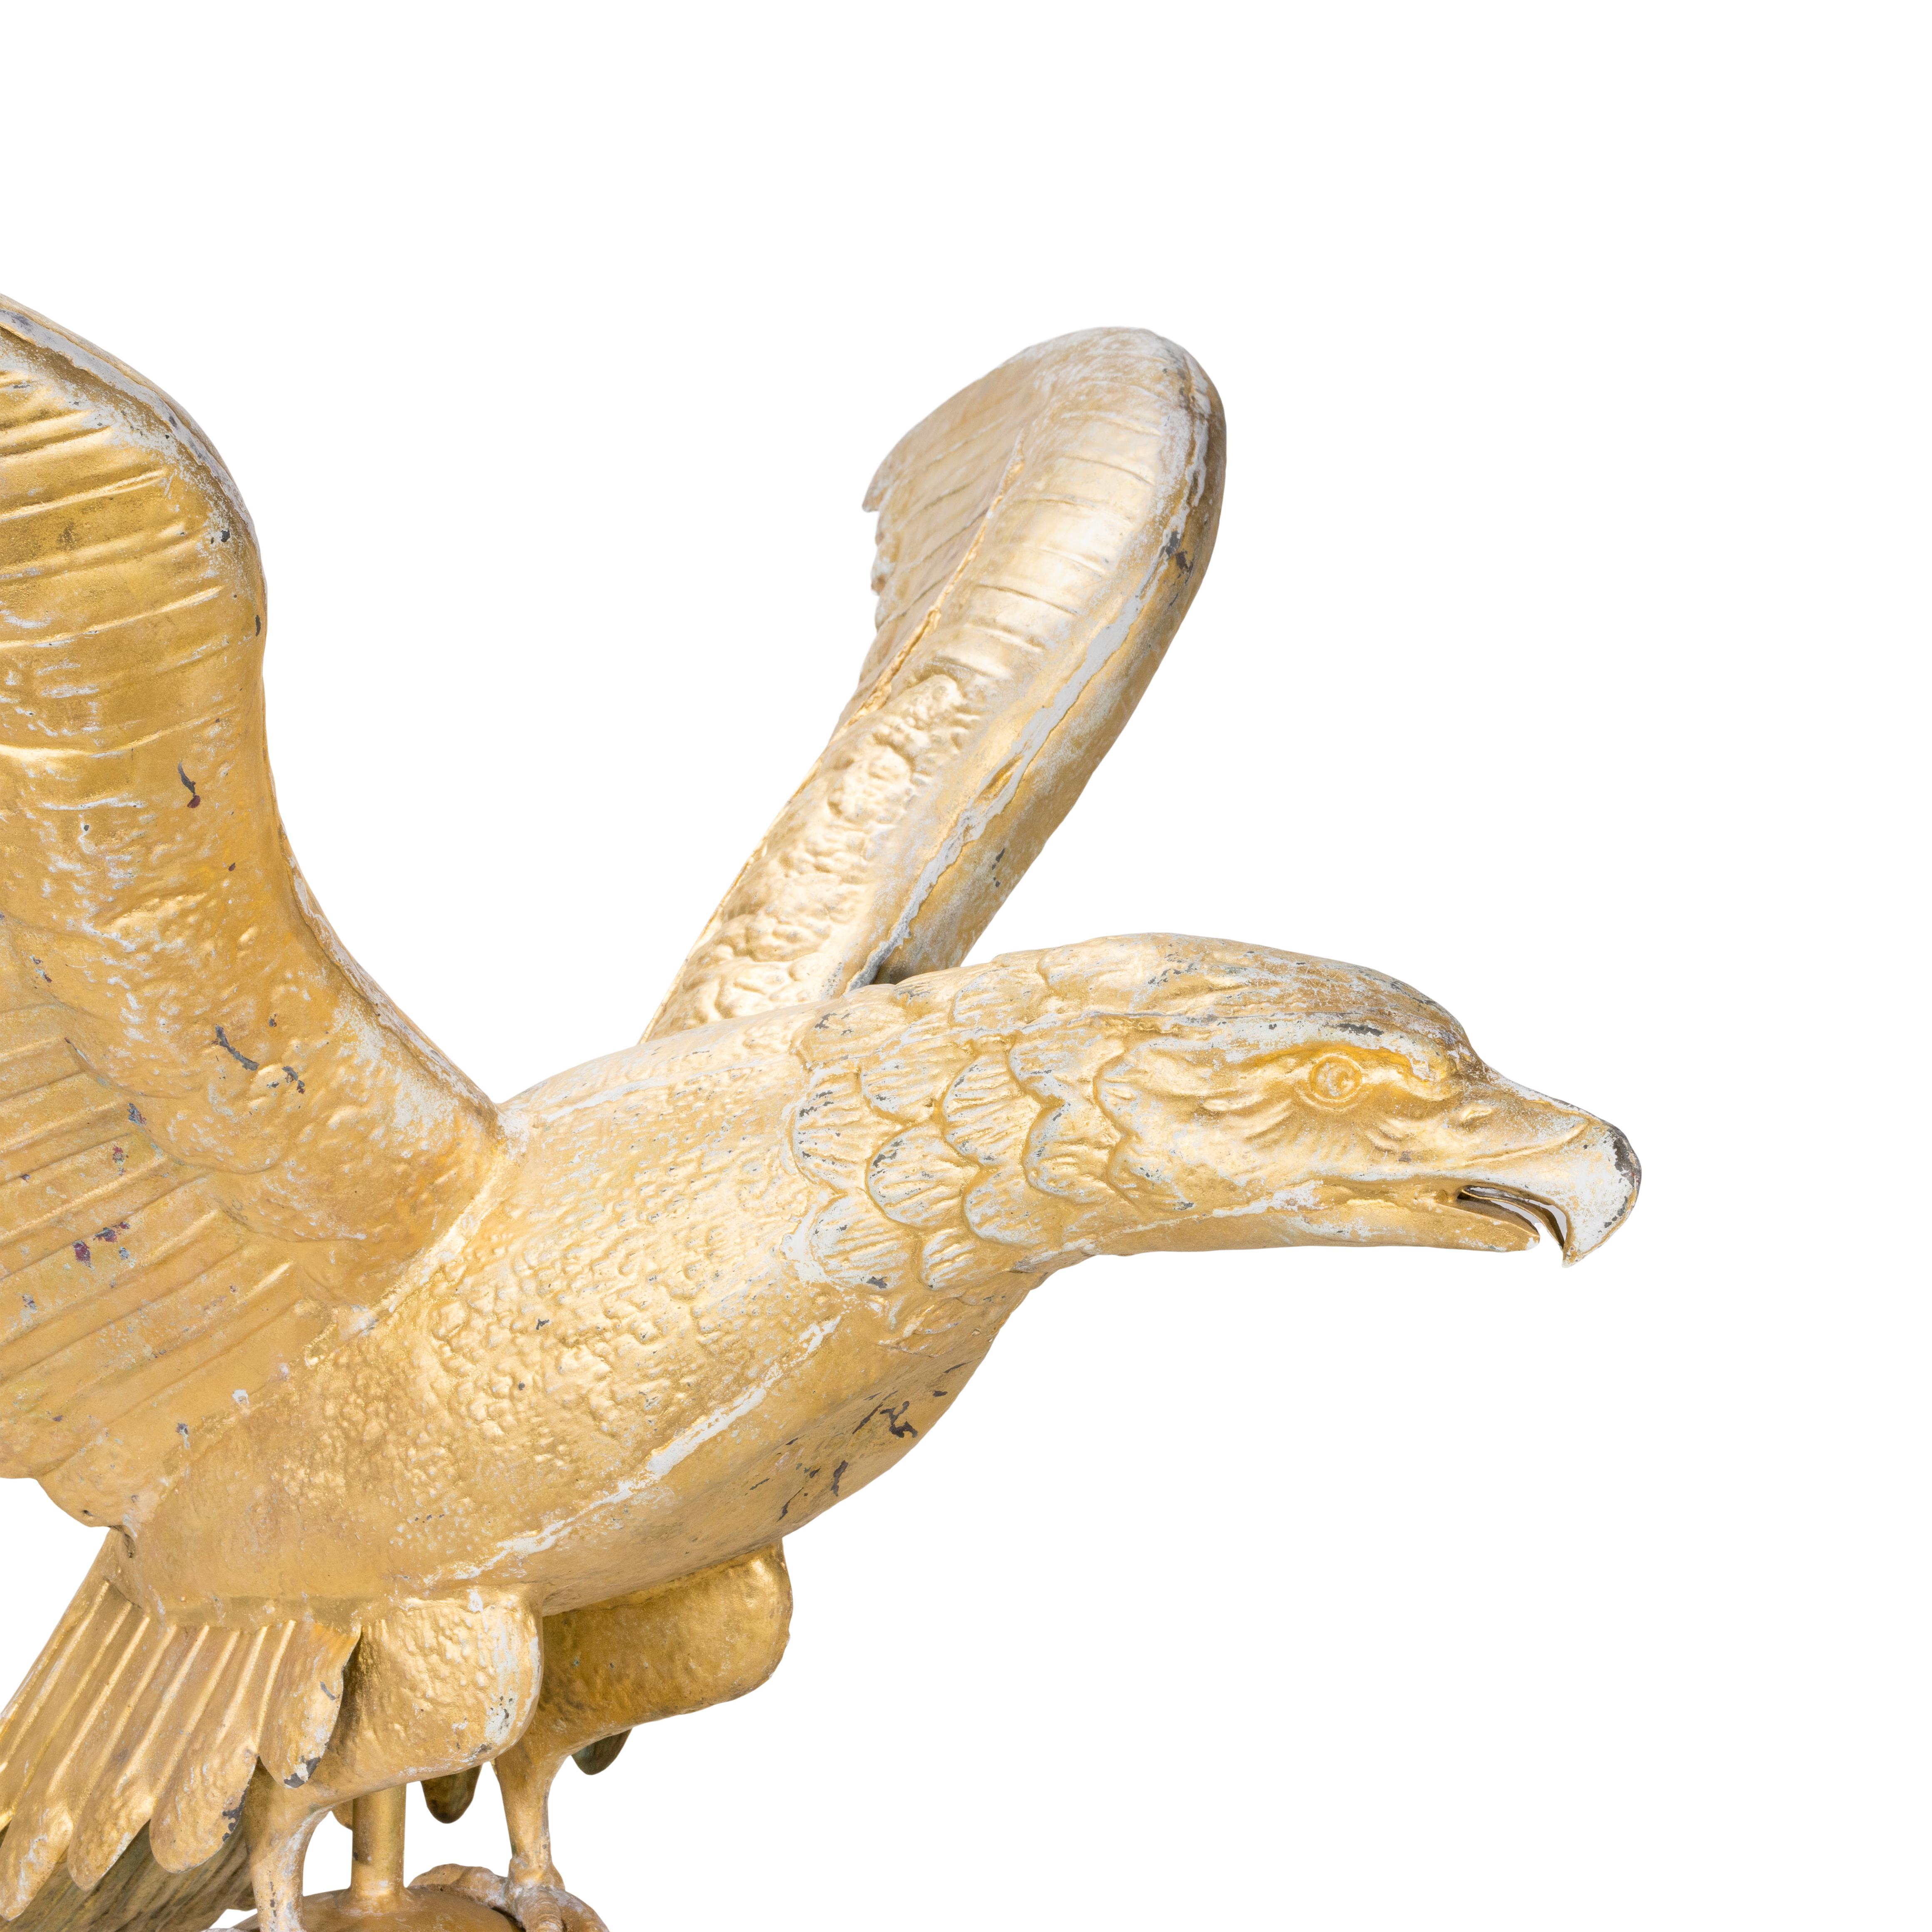 Wetterfahne in Form eines kupfernen Adlers. Sehr große, hohle Adlerform mit ausgebreiteten Flügeln und offenem Schnabel, die auf einer Kugel über einem Directional-Pfeil ruht. Drehbarer späterer Eisenfuß. Geringe Oberflächenabnutzung und